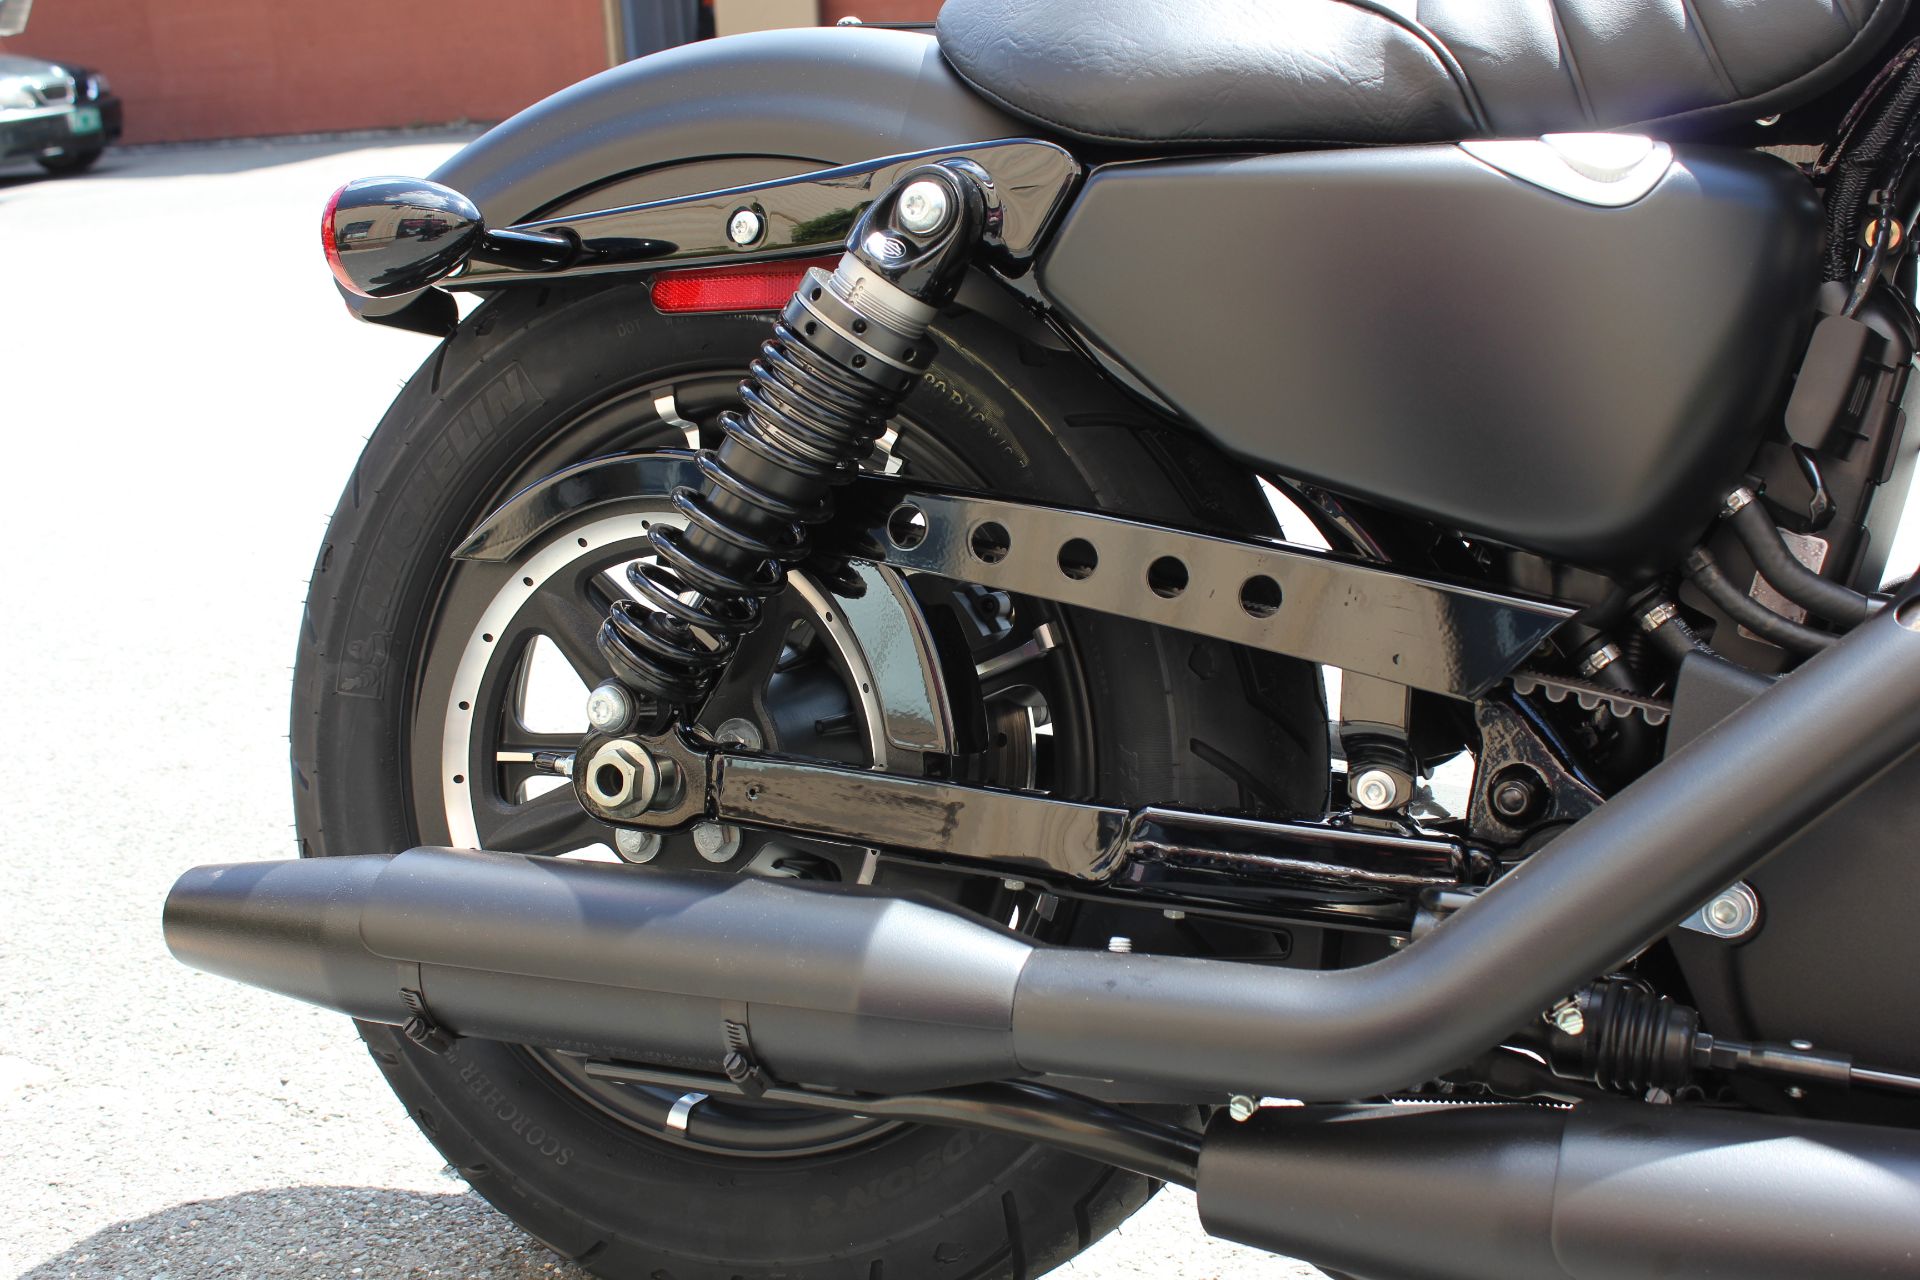 2022 Harley-Davidson Iron 883™ in Pittsfield, Massachusetts - Photo 8